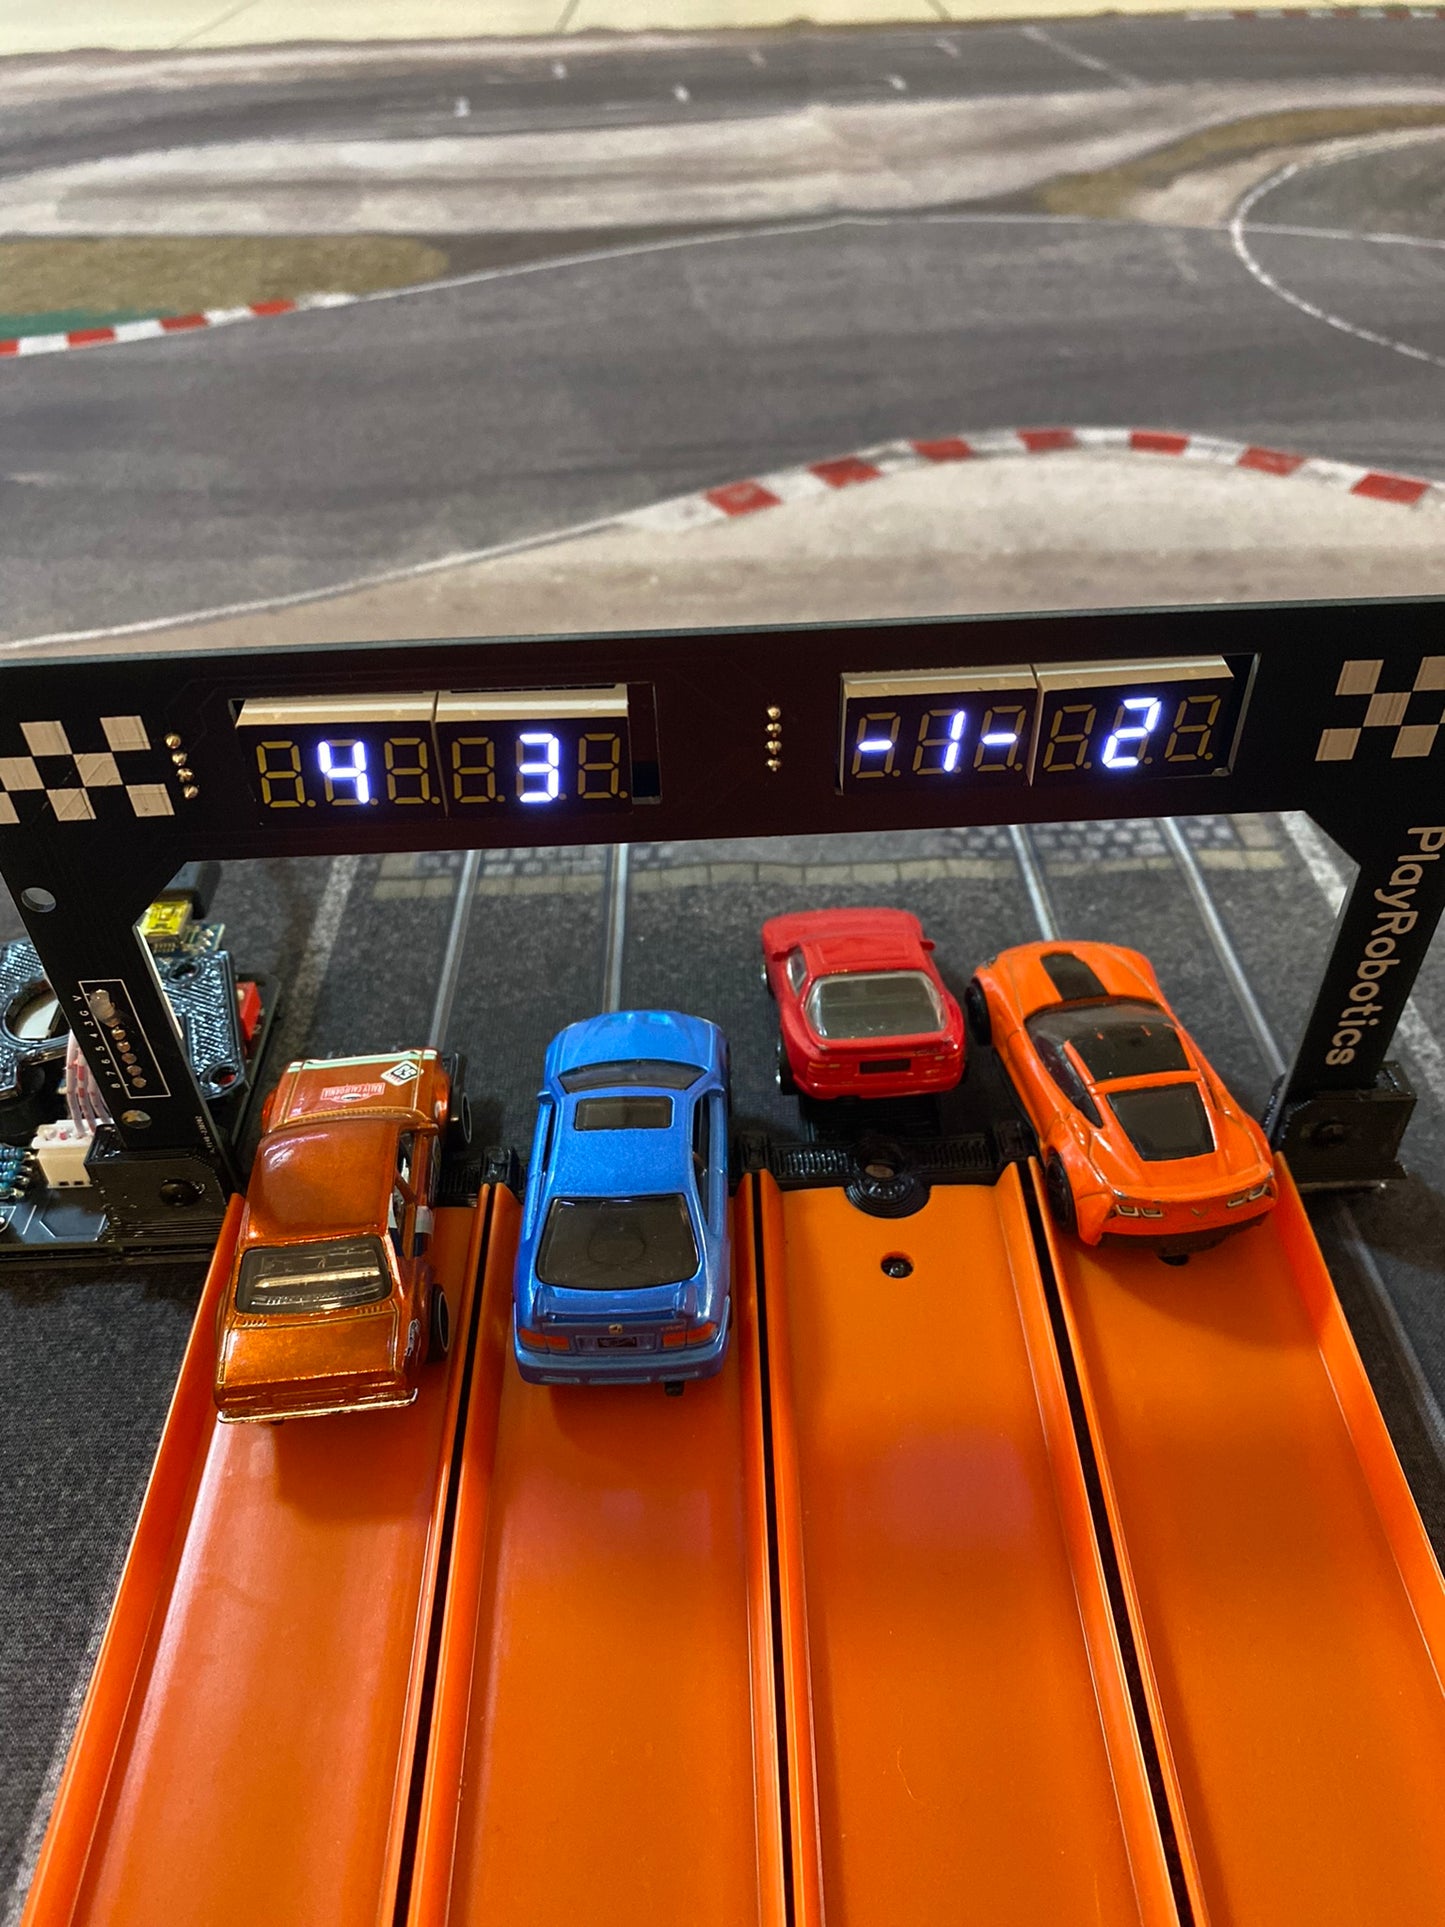 4 Lane Drag Racing Timing System